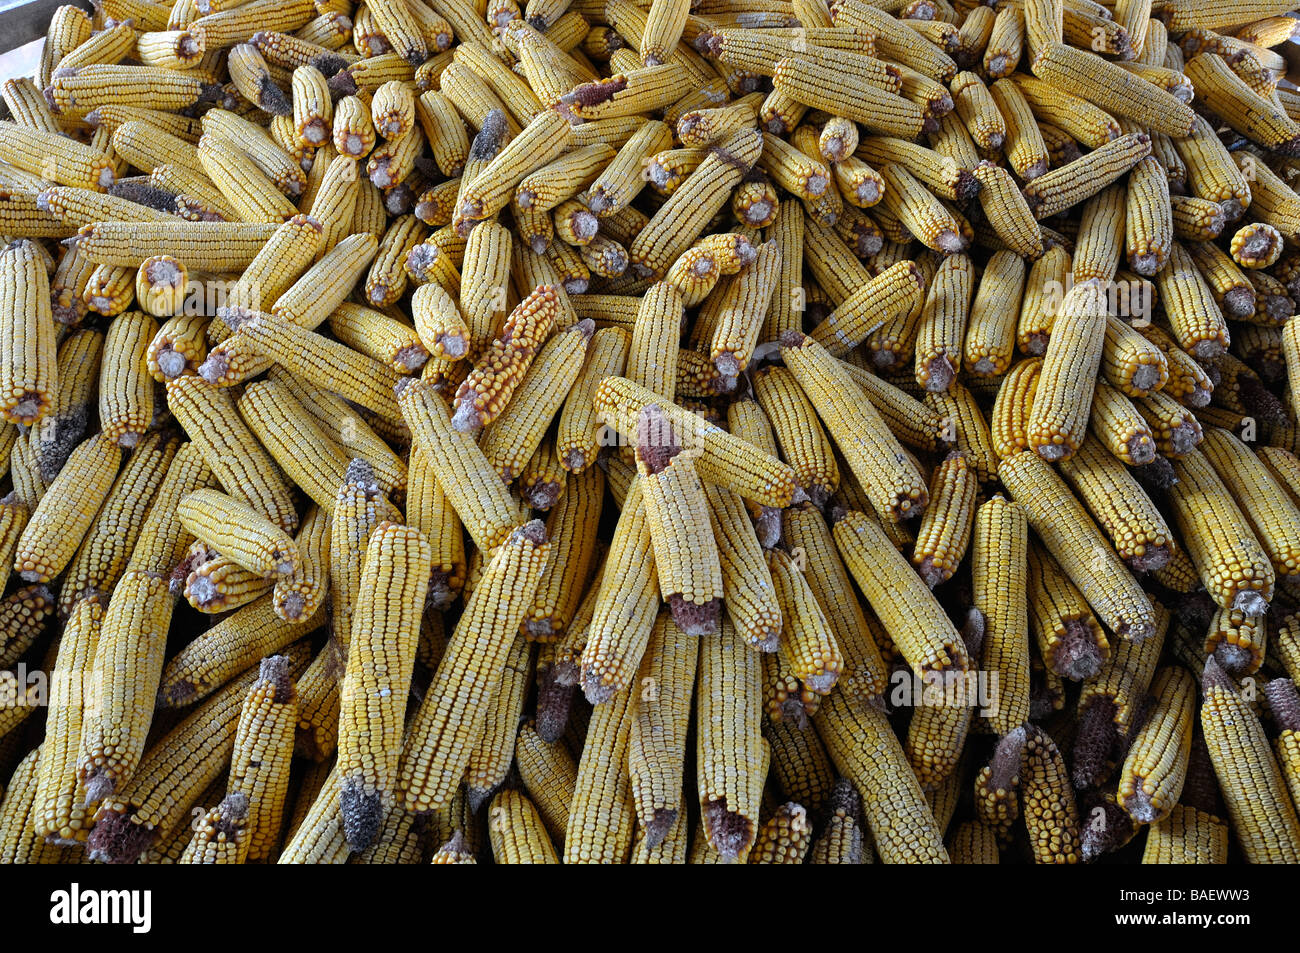 Corn storage in the village of Vojka in the Vojvodina Serbia. Stock Photo